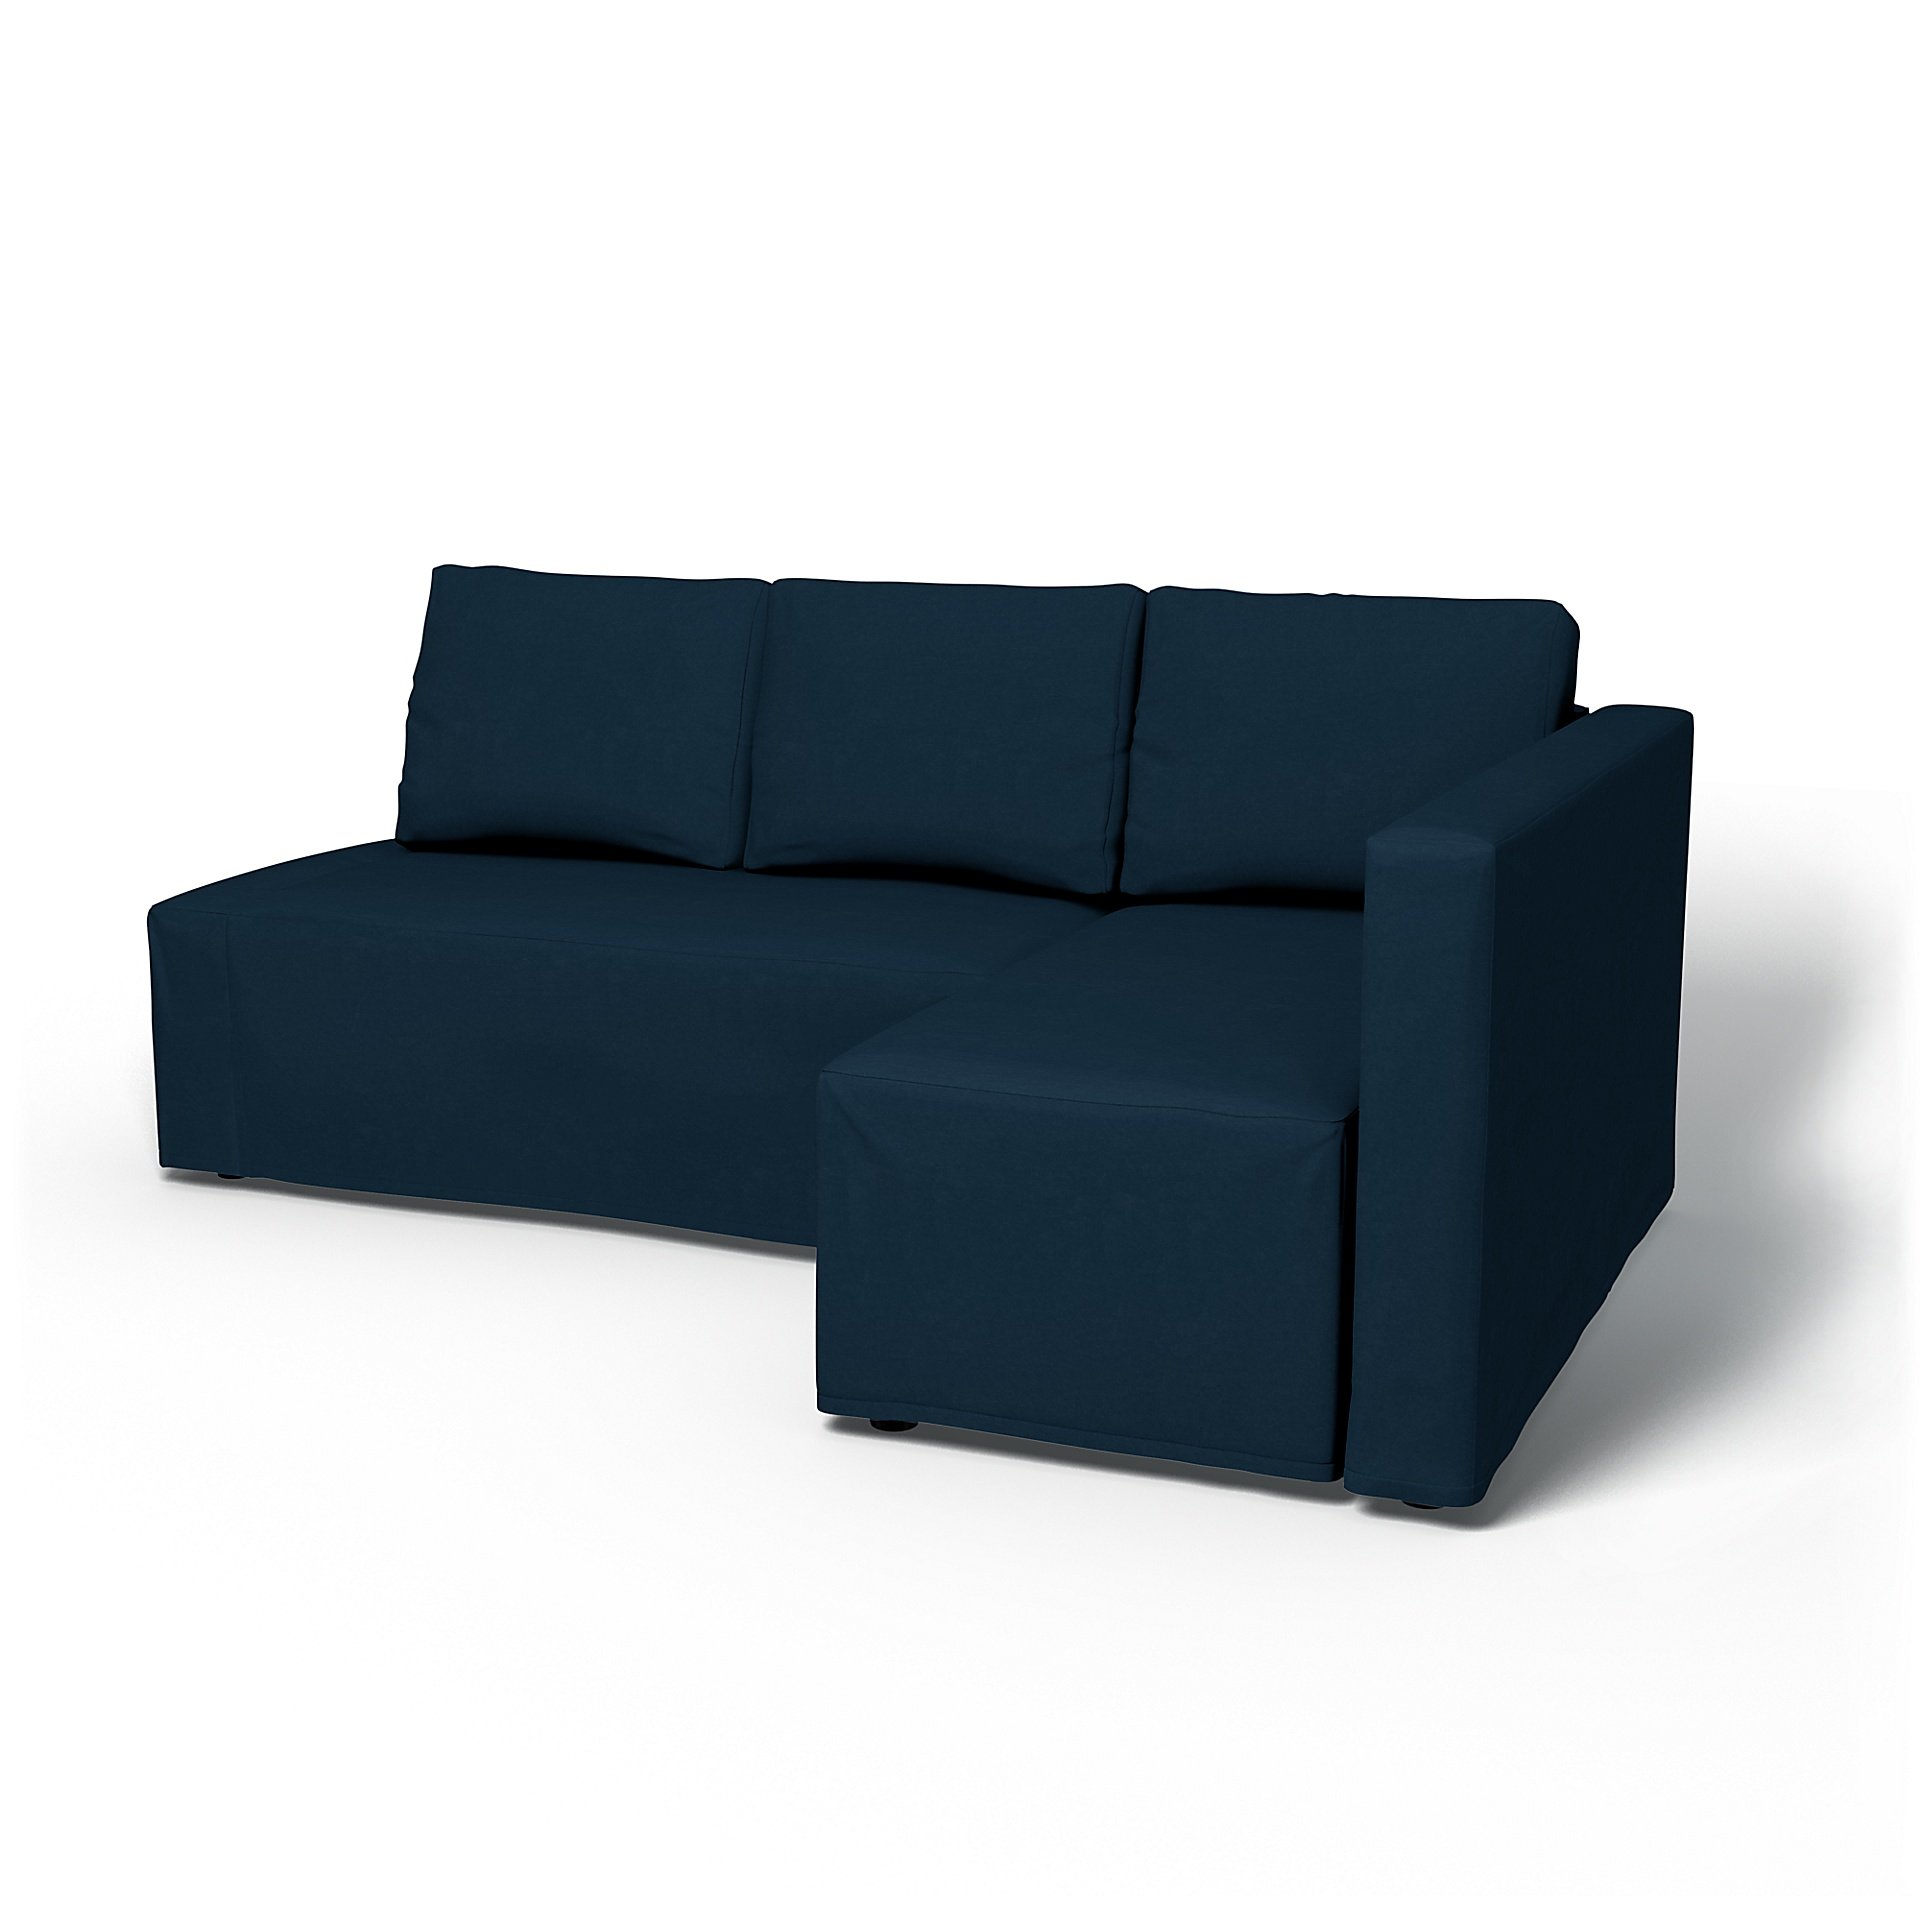 IKEA - Friheten Sofa Bed with Right Chaise Cover, Midnight, Velvet - Bemz